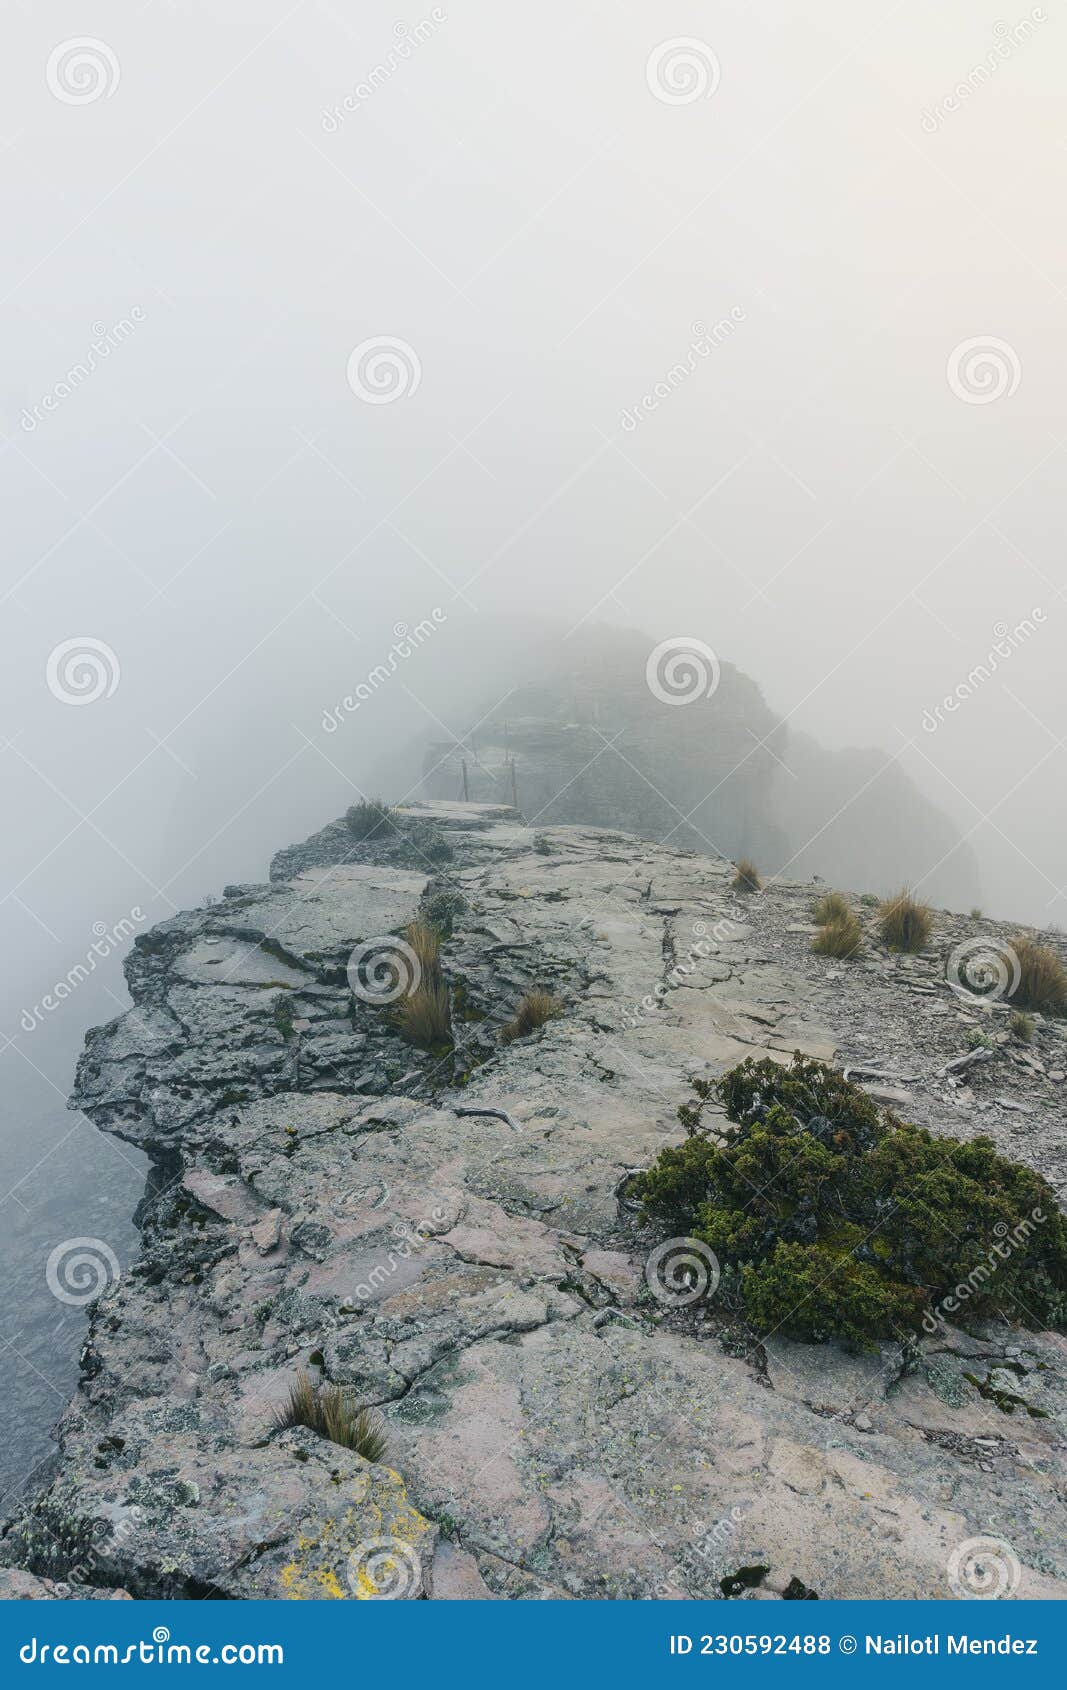 cofre de perote mountain peak in fog